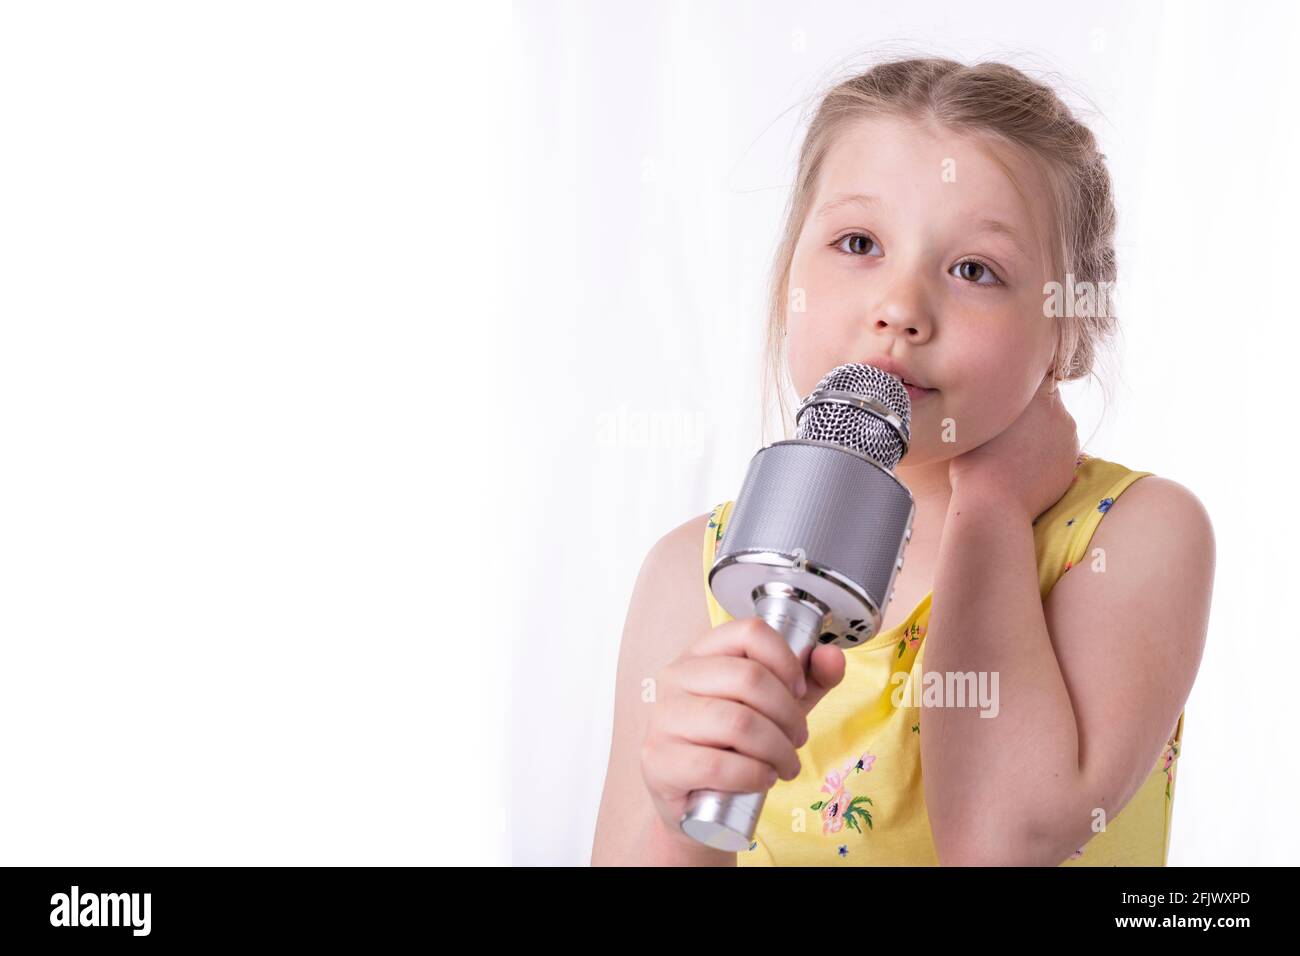 Ein blondes kleines Mädchen singt in ihren Händen ein Lied in ein Mikrofon.  Ein schönes Kind zeigt seine aufrichtigen Gefühle von Glück und positiv.  Geflochtene Haare Stockfotografie - Alamy